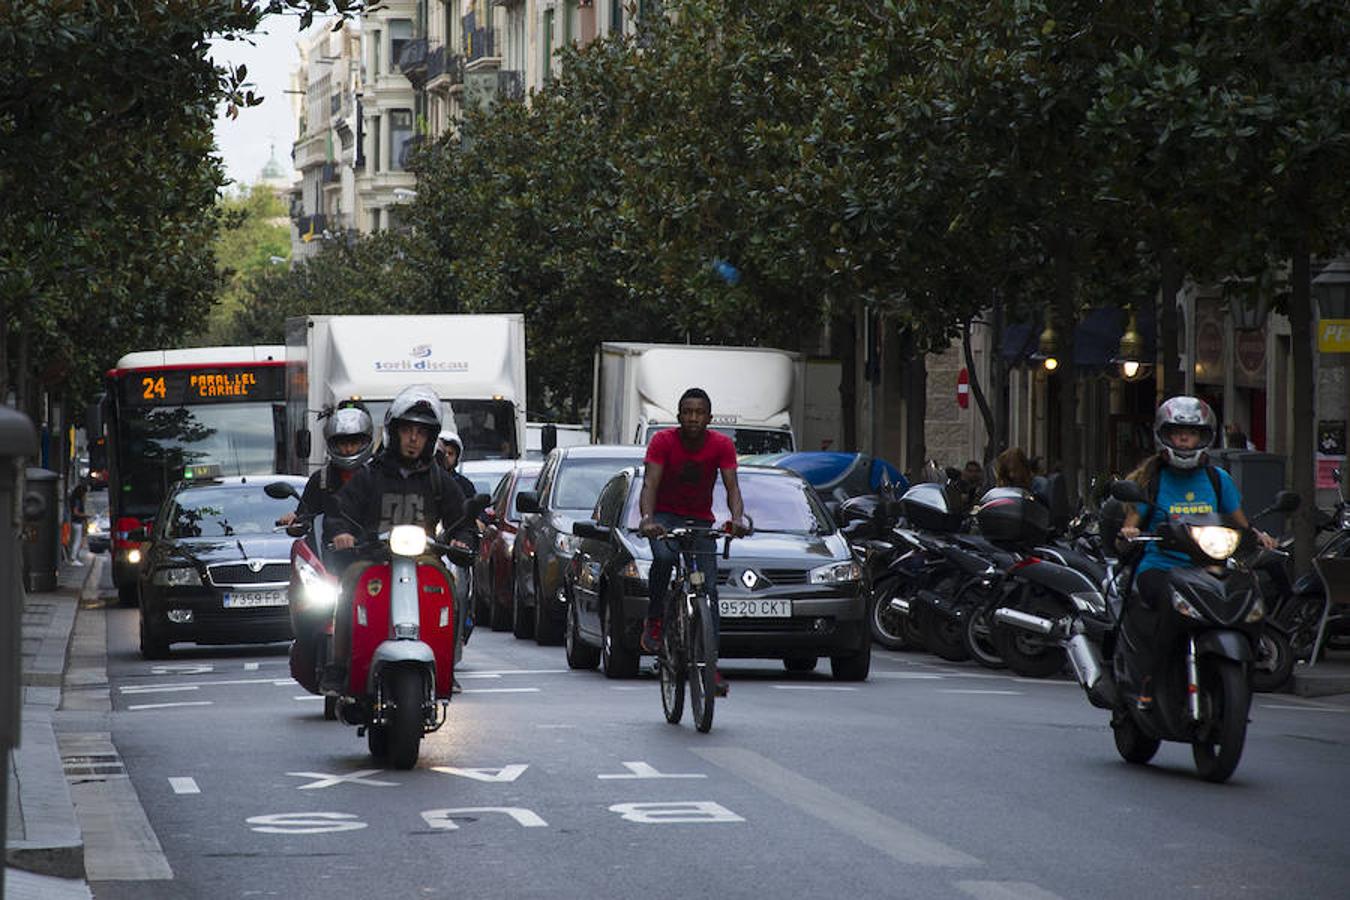 Las carreteras madrileñas han amanecido con tráfico más denso que de costumbre, y se está manteniendo durante la mañana. Algo que pasaría por alto si no se celebrara hoy el Día sin Coches